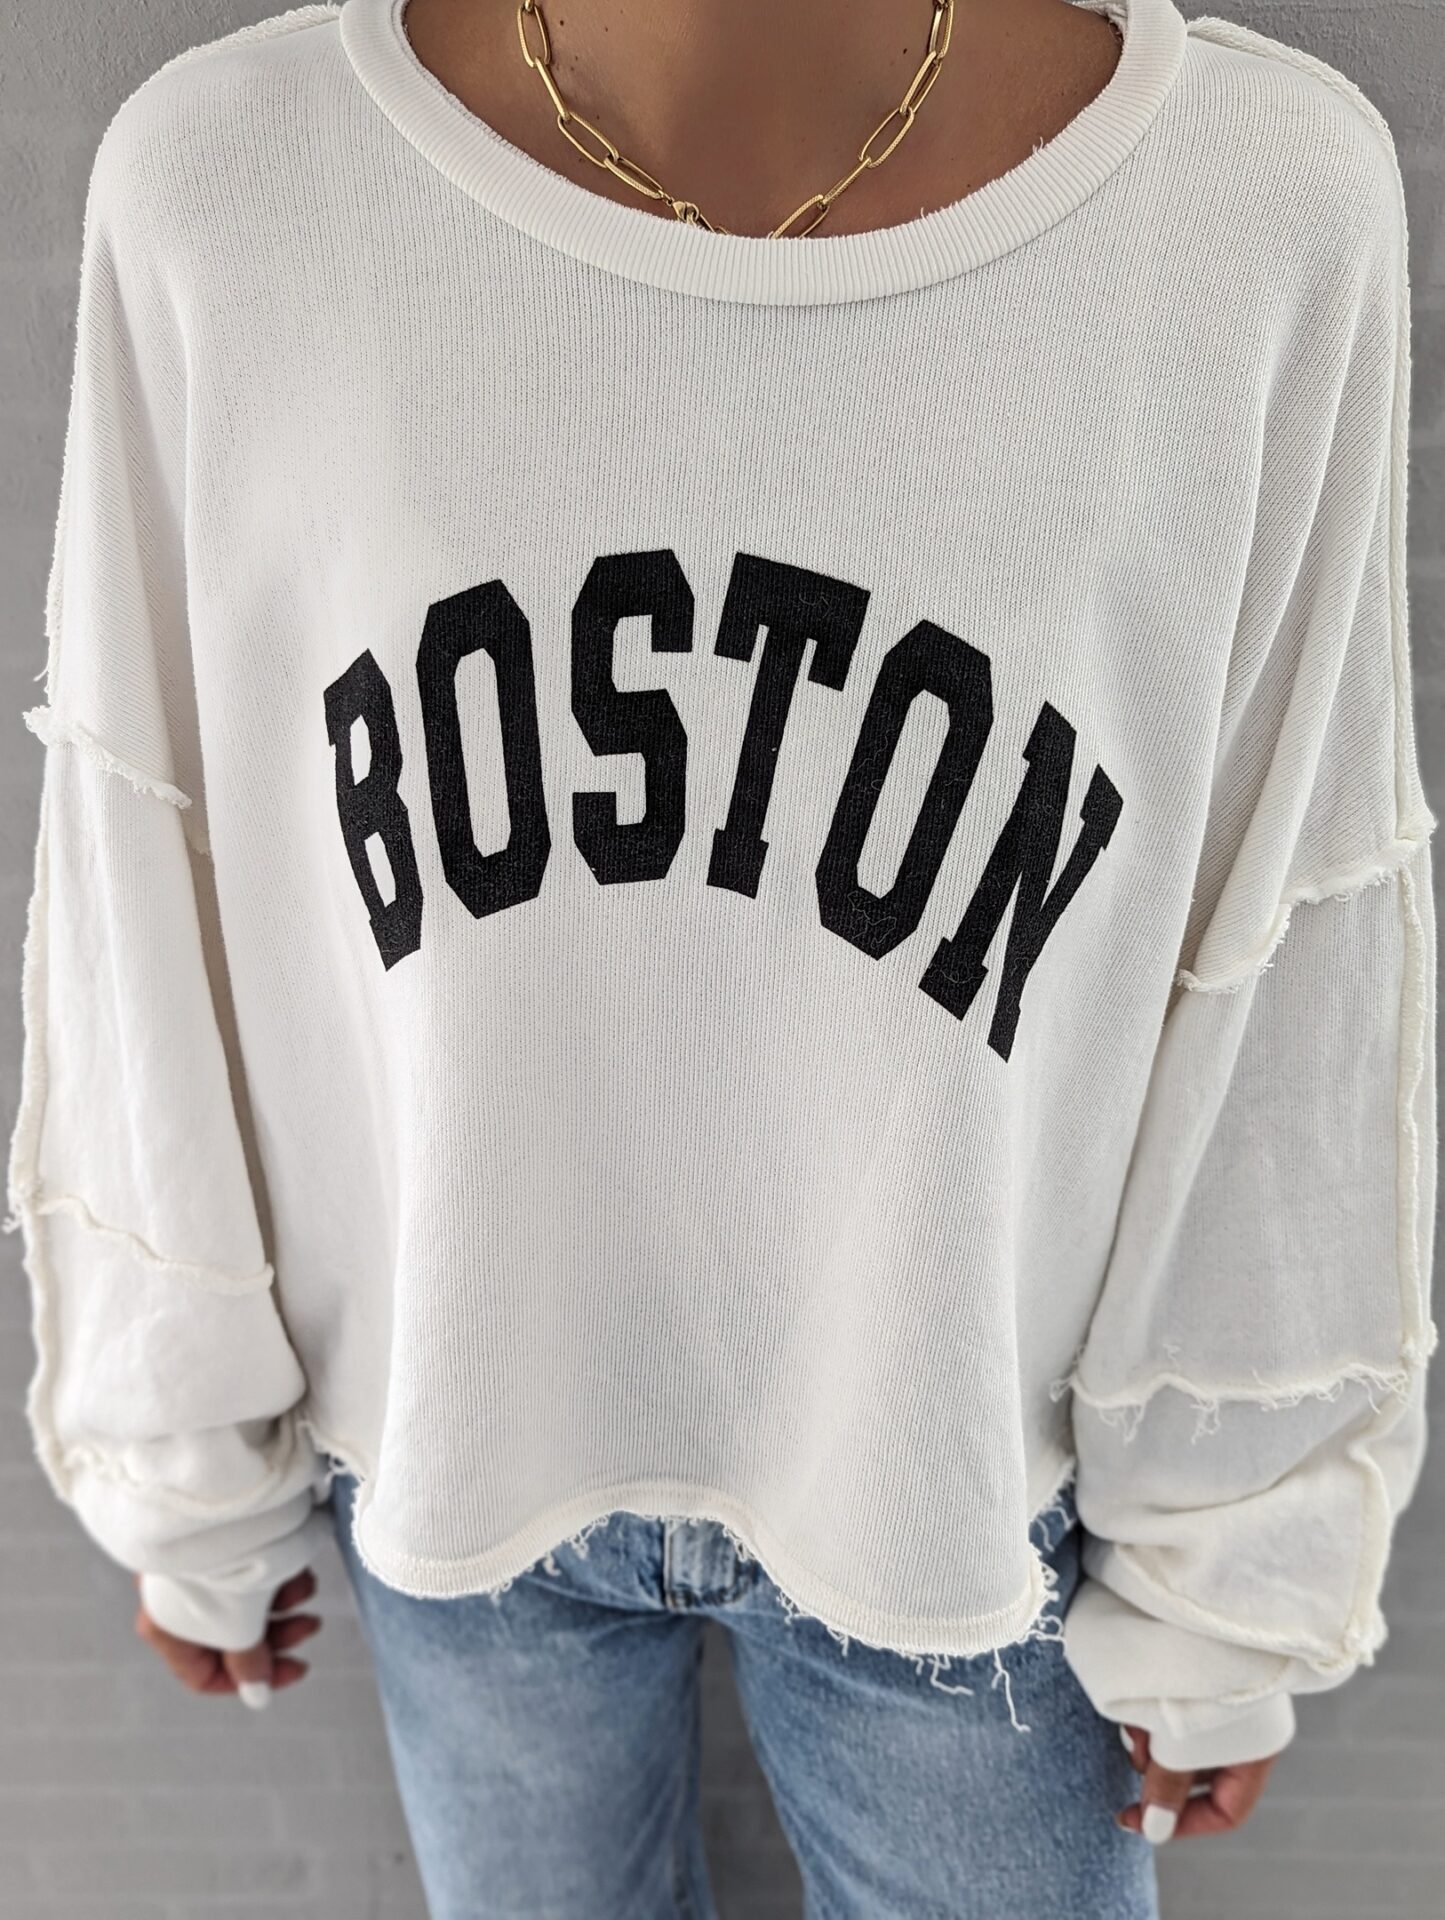 Sweater BOSTON – versch. Farben